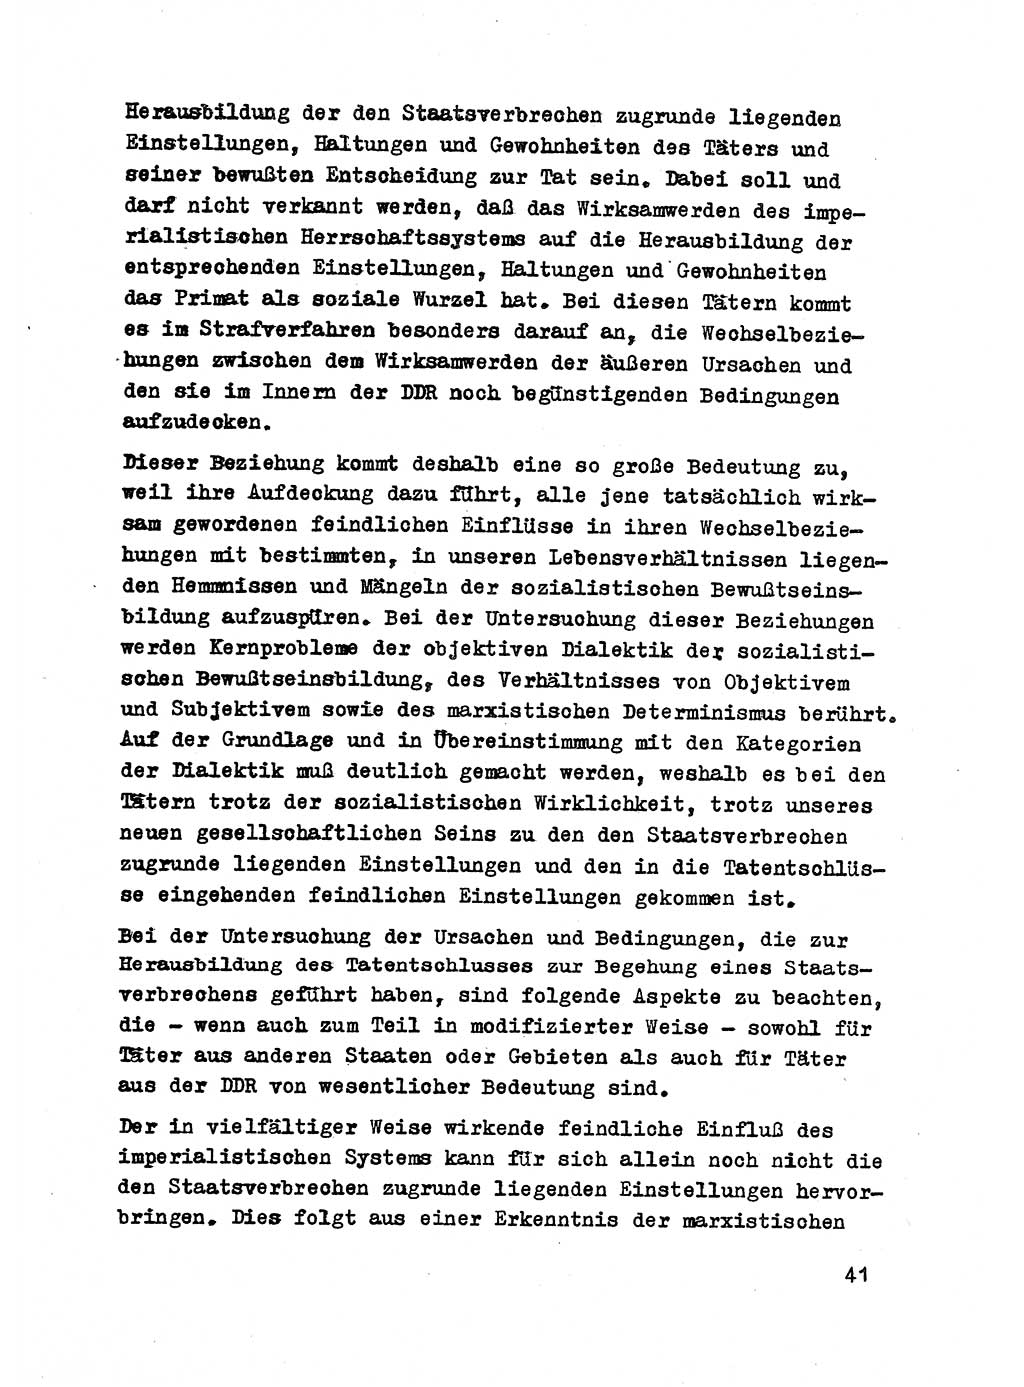 Strafrecht der DDR (Deutsche Demokratische Republik), Besonderer Teil, Lehrmaterial, Heft 2 1969, Seite 41 (Strafr. DDR BT Lehrmat. H. 2 1969, S. 41)